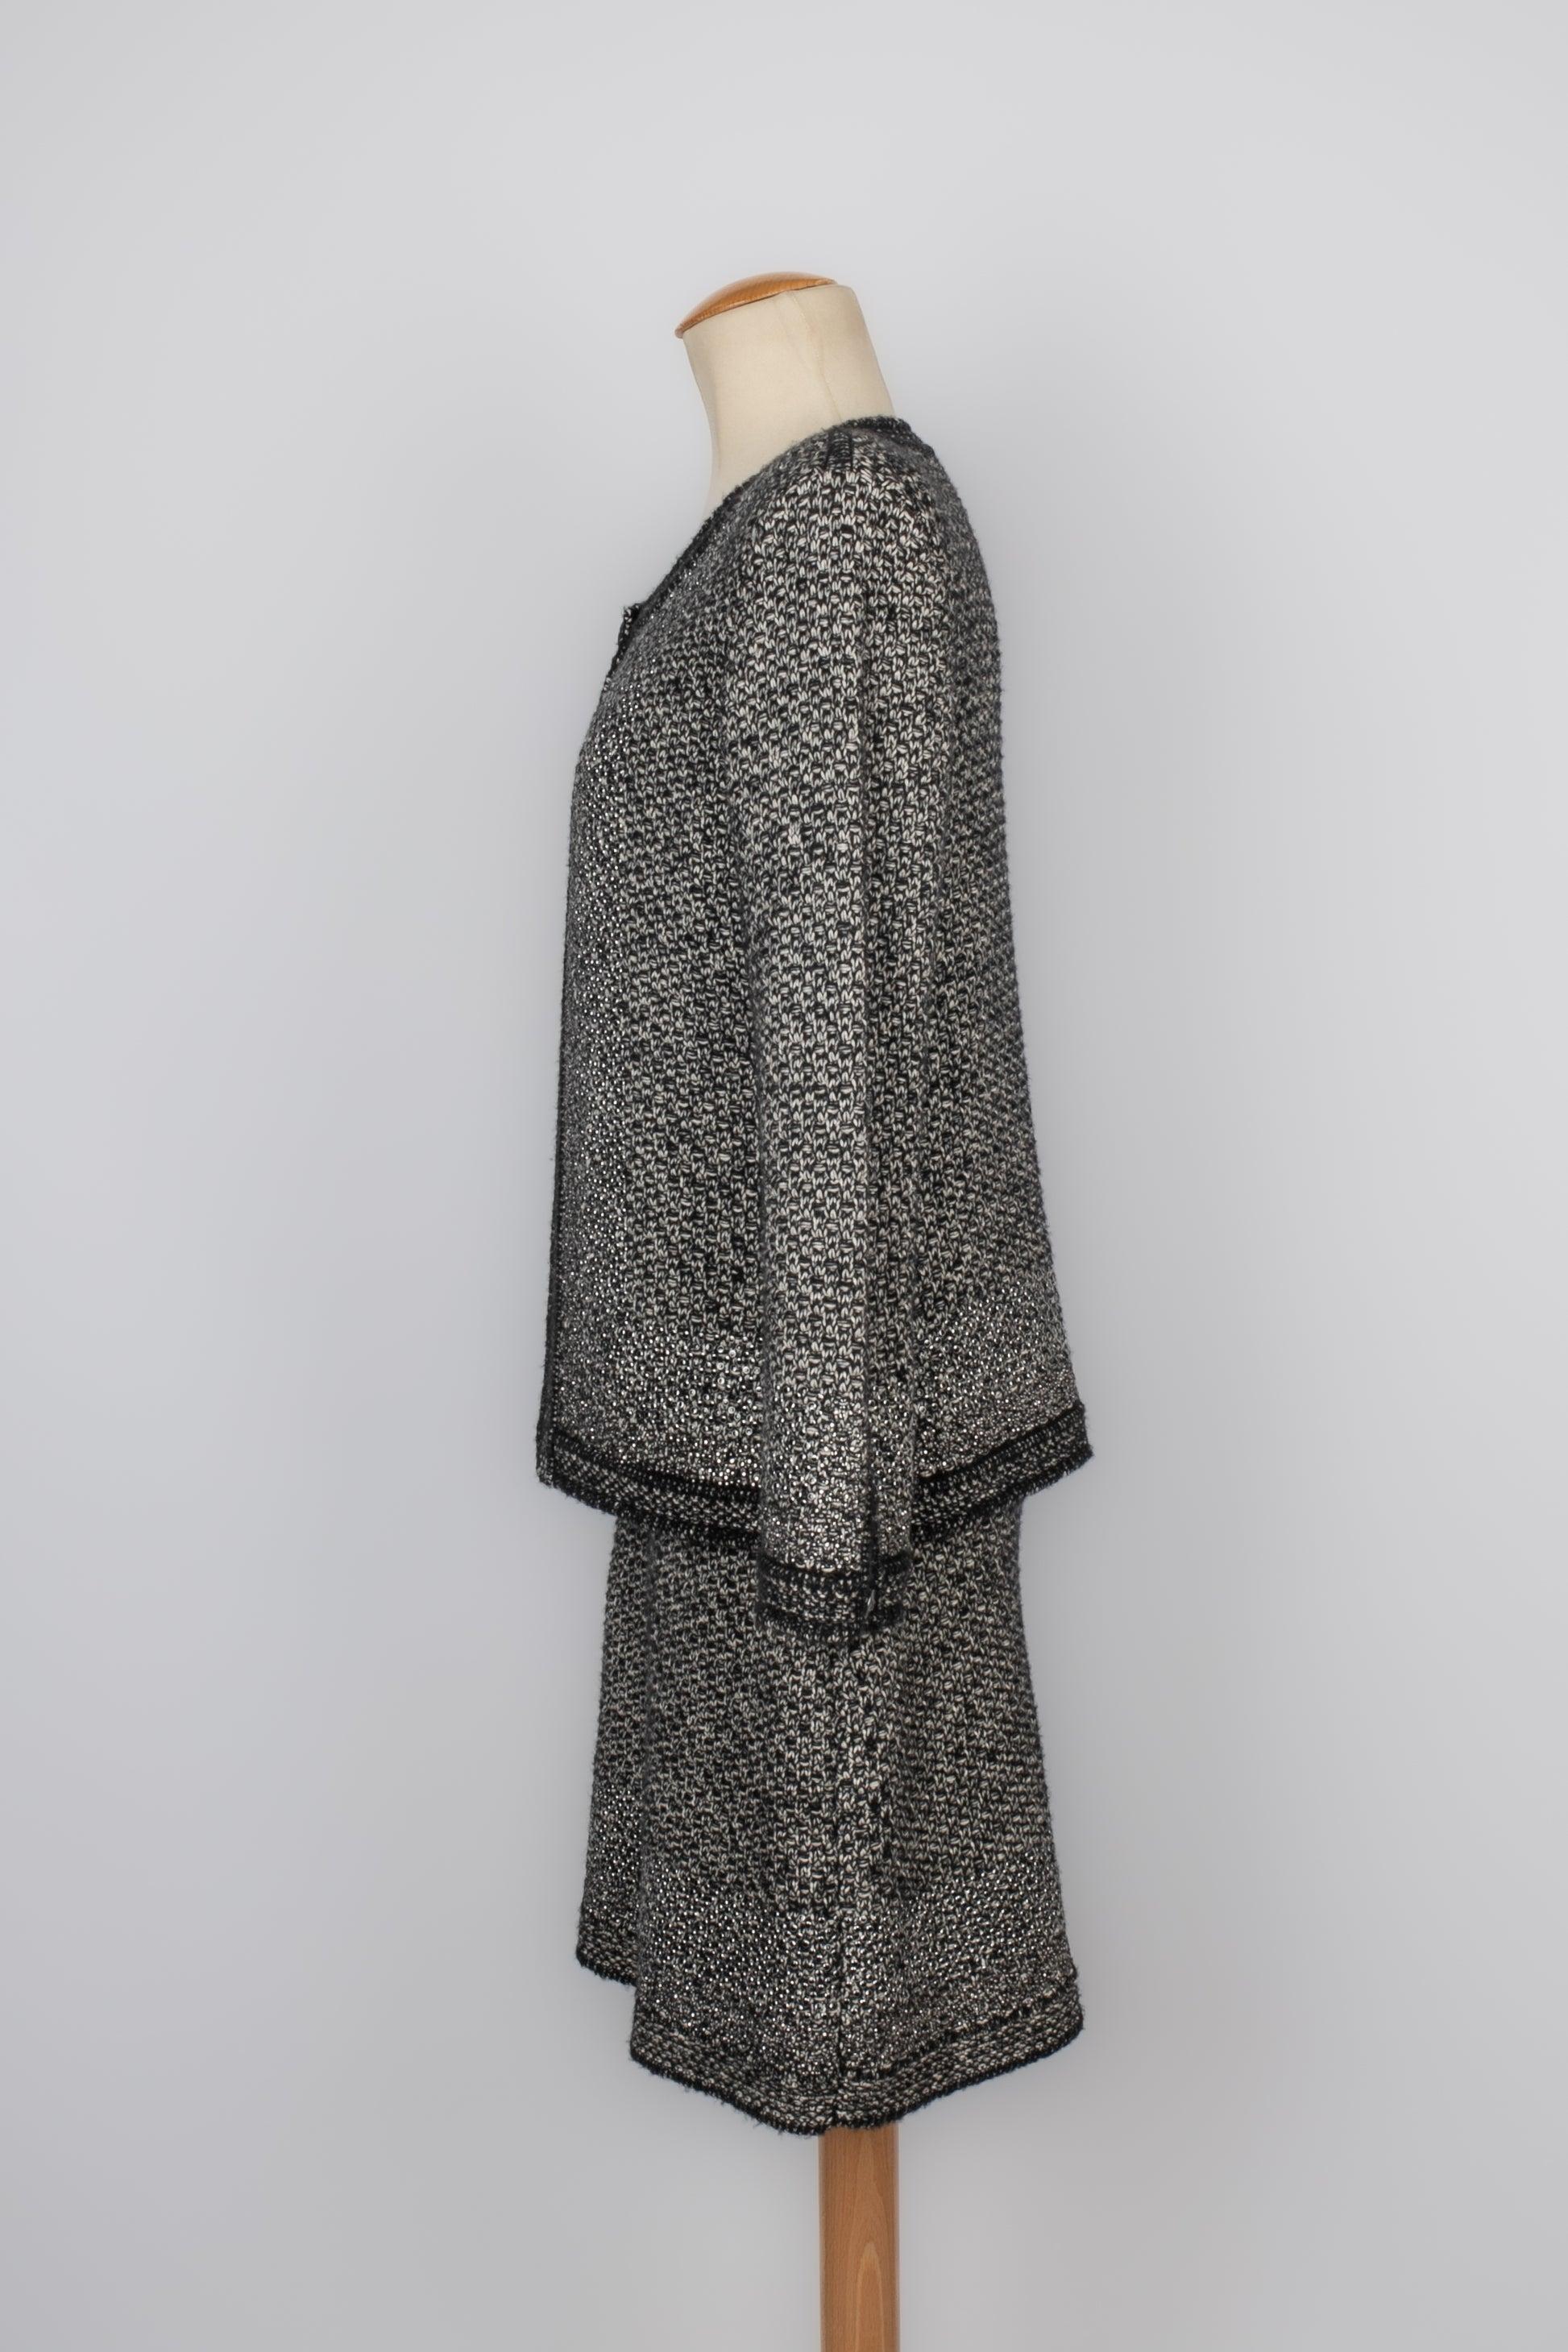 Chanel - (Made in France) Ensemble en laine, soie et cachemire composé d'un cardigan et d'une robe. Taille 40FR indiquée.

Informations complémentaires :
Condit : Très bon état.
Dimensions : Cardigan : Largeur des épaules : 40 cm - Poitrine : 52 cm